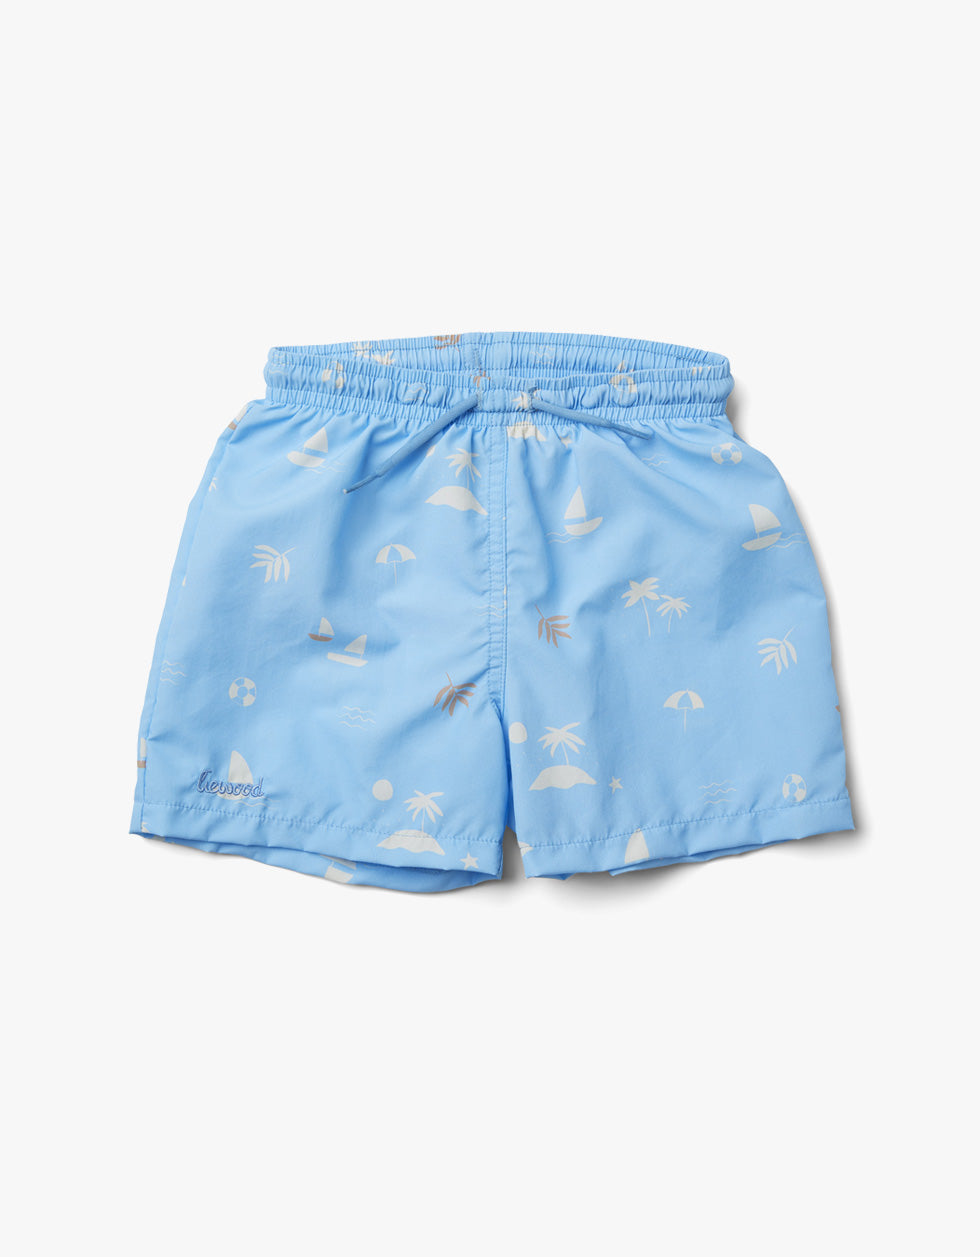 Duke Board Shorts - Seaside Sky Blue